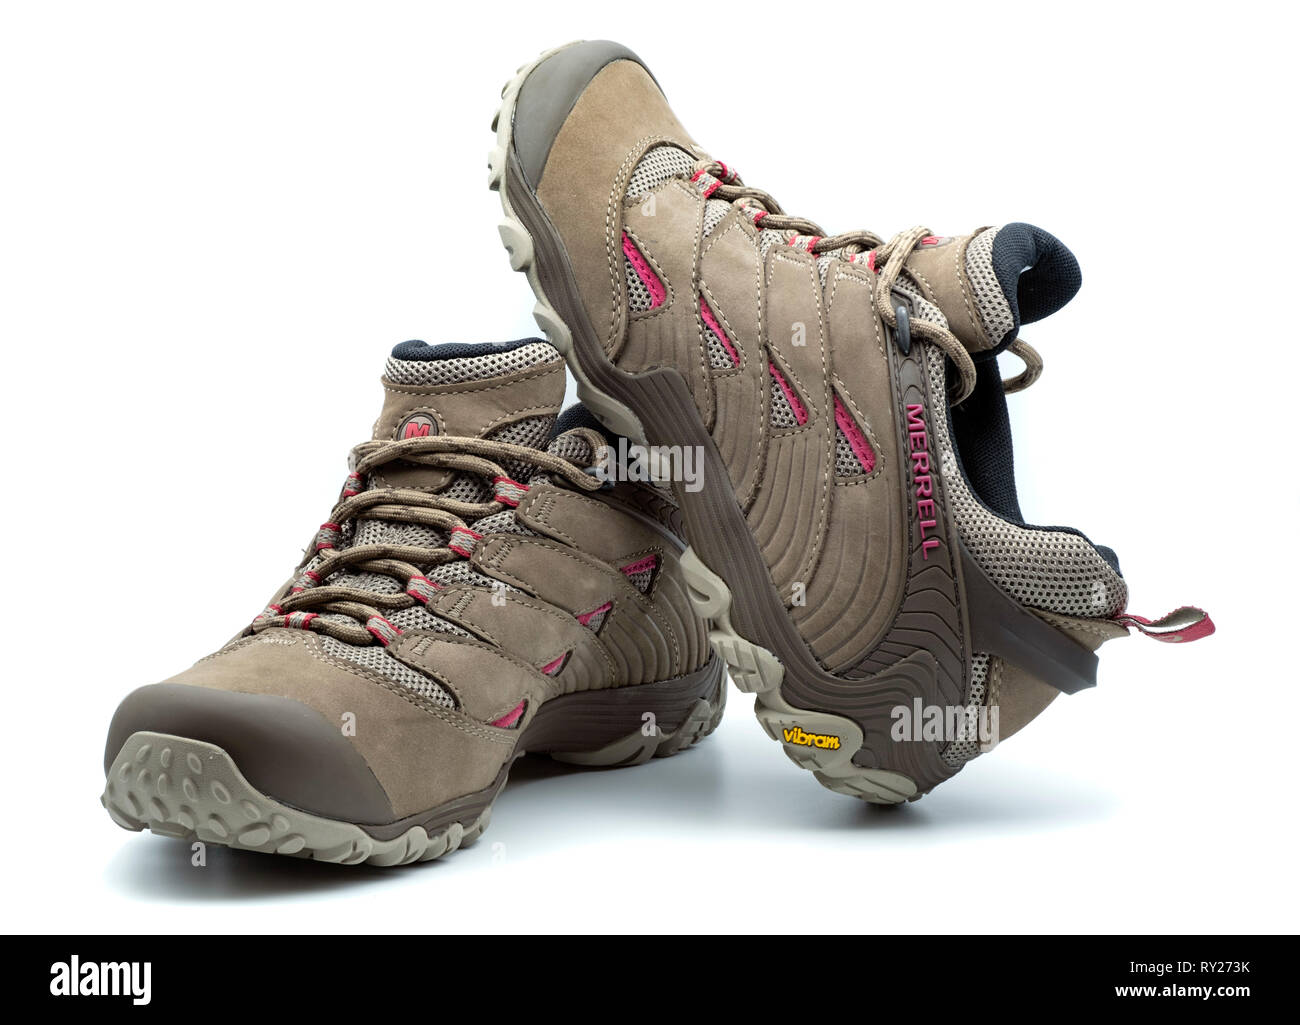 Une paire de chaussures de randonnée Merrell brown isolé sur fond blanc Banque D'Images